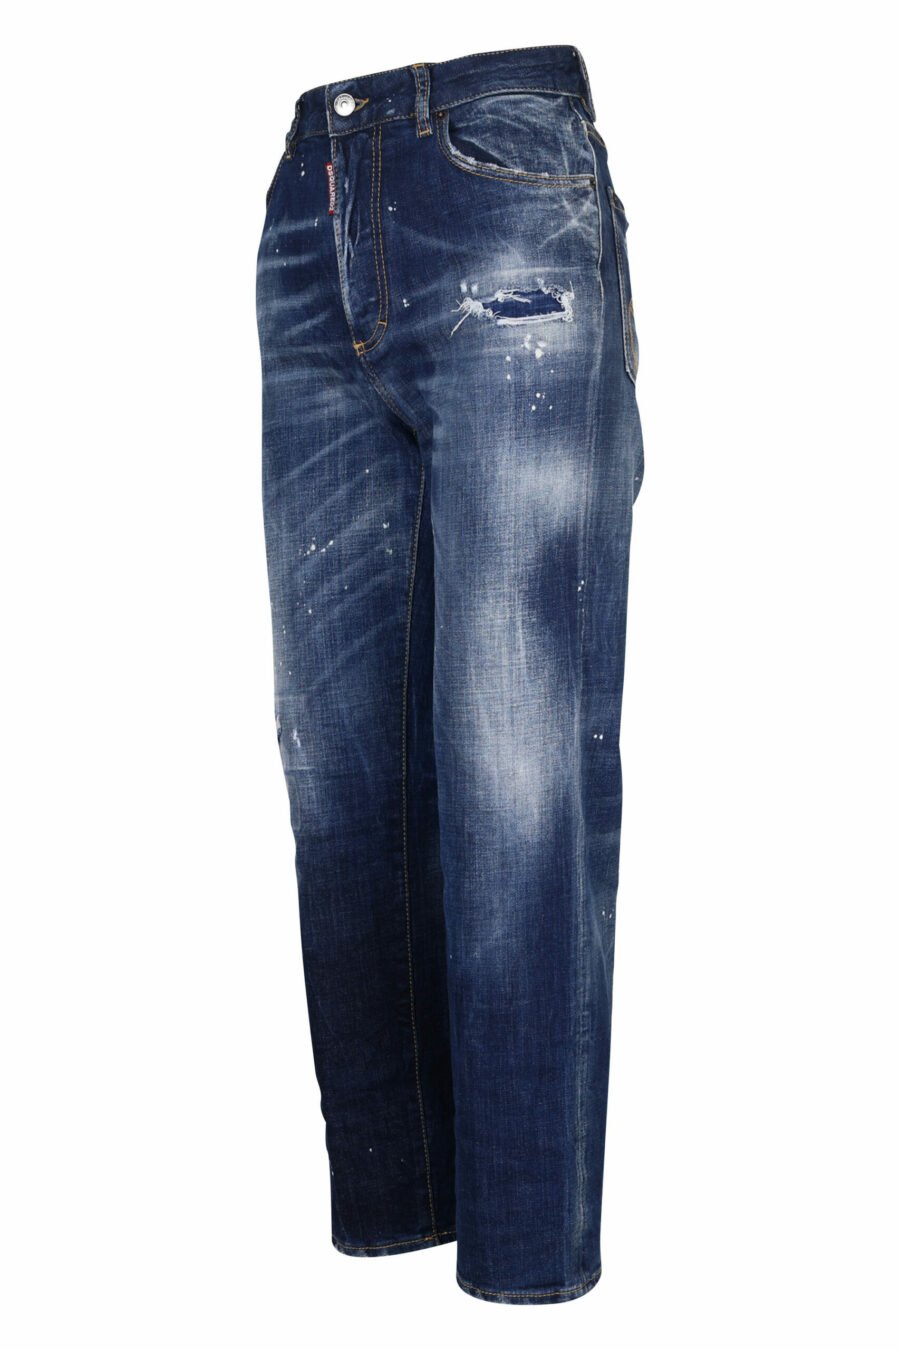 Pantalón vaquero "boston jean" azul desgastado con rotos - 8054148122256 1 scaled